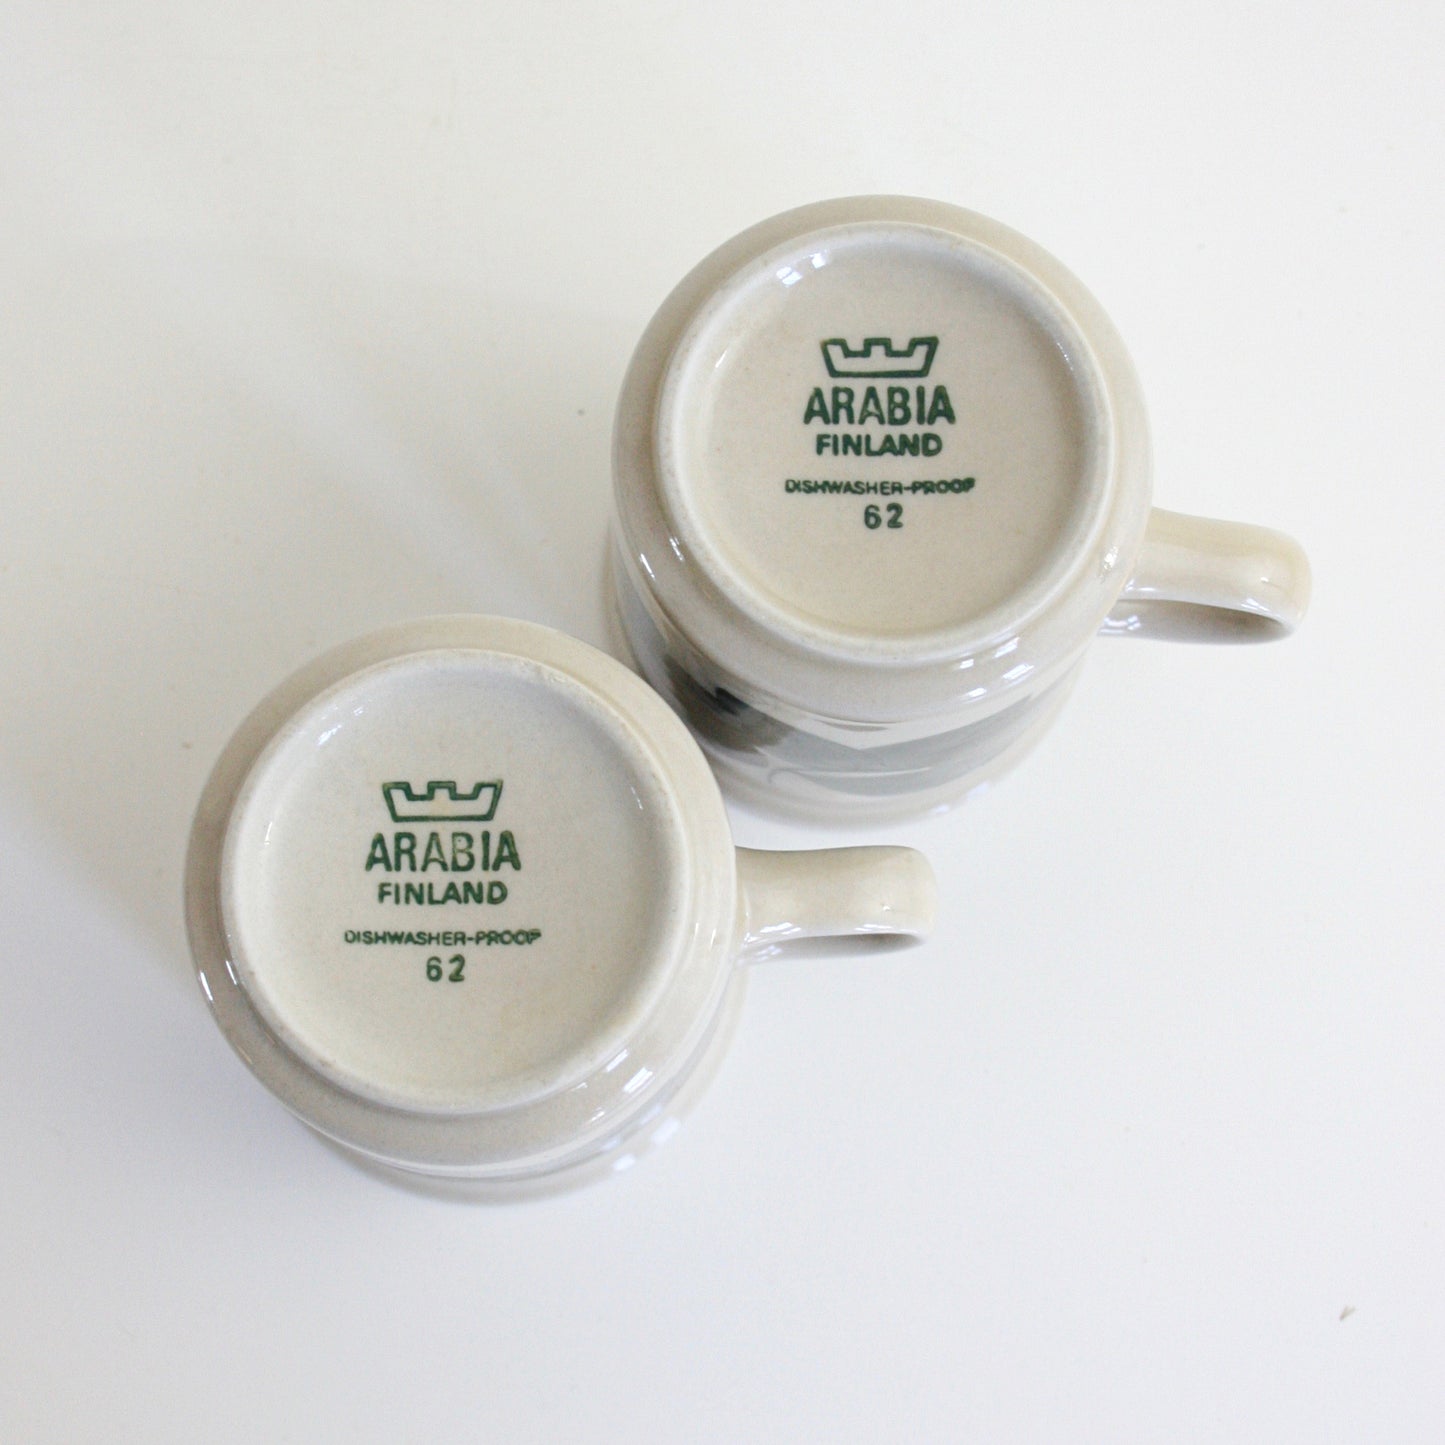 SOLD - Vintage Arabia Finland Ruija Coffee Mugs